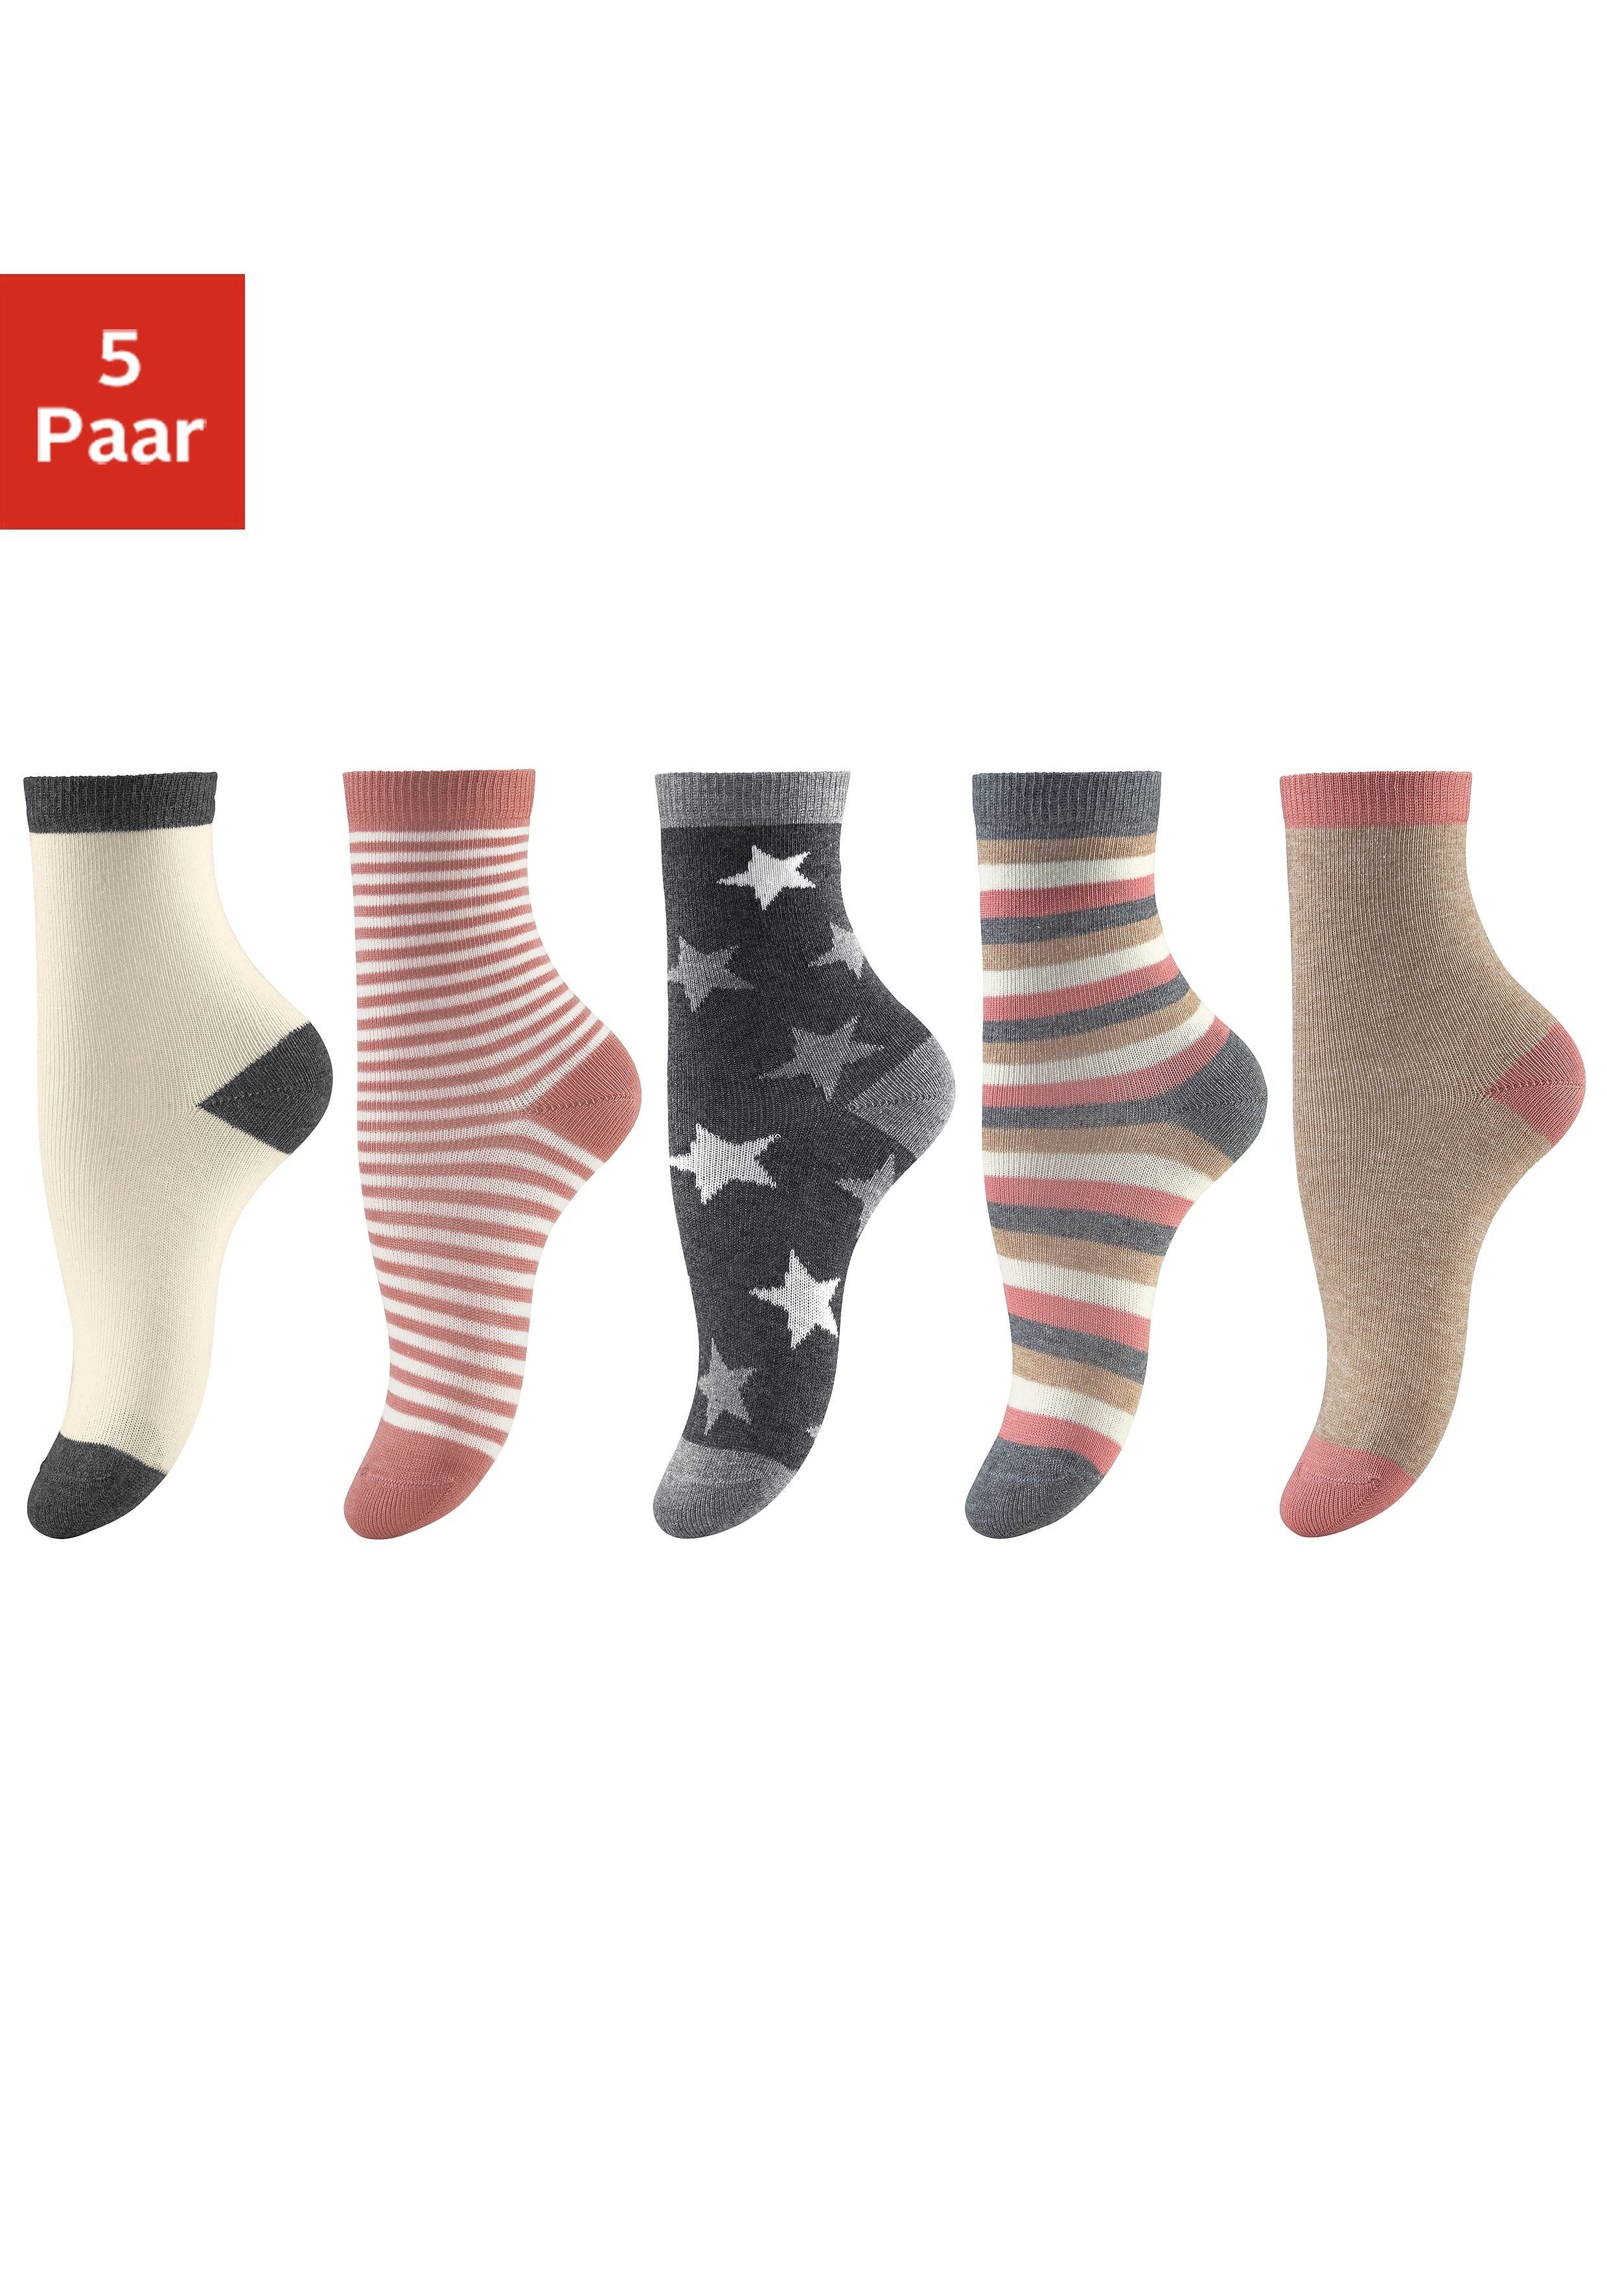 Socken (5-Paar) in 5 verschiedenen Designs | Lange Socken